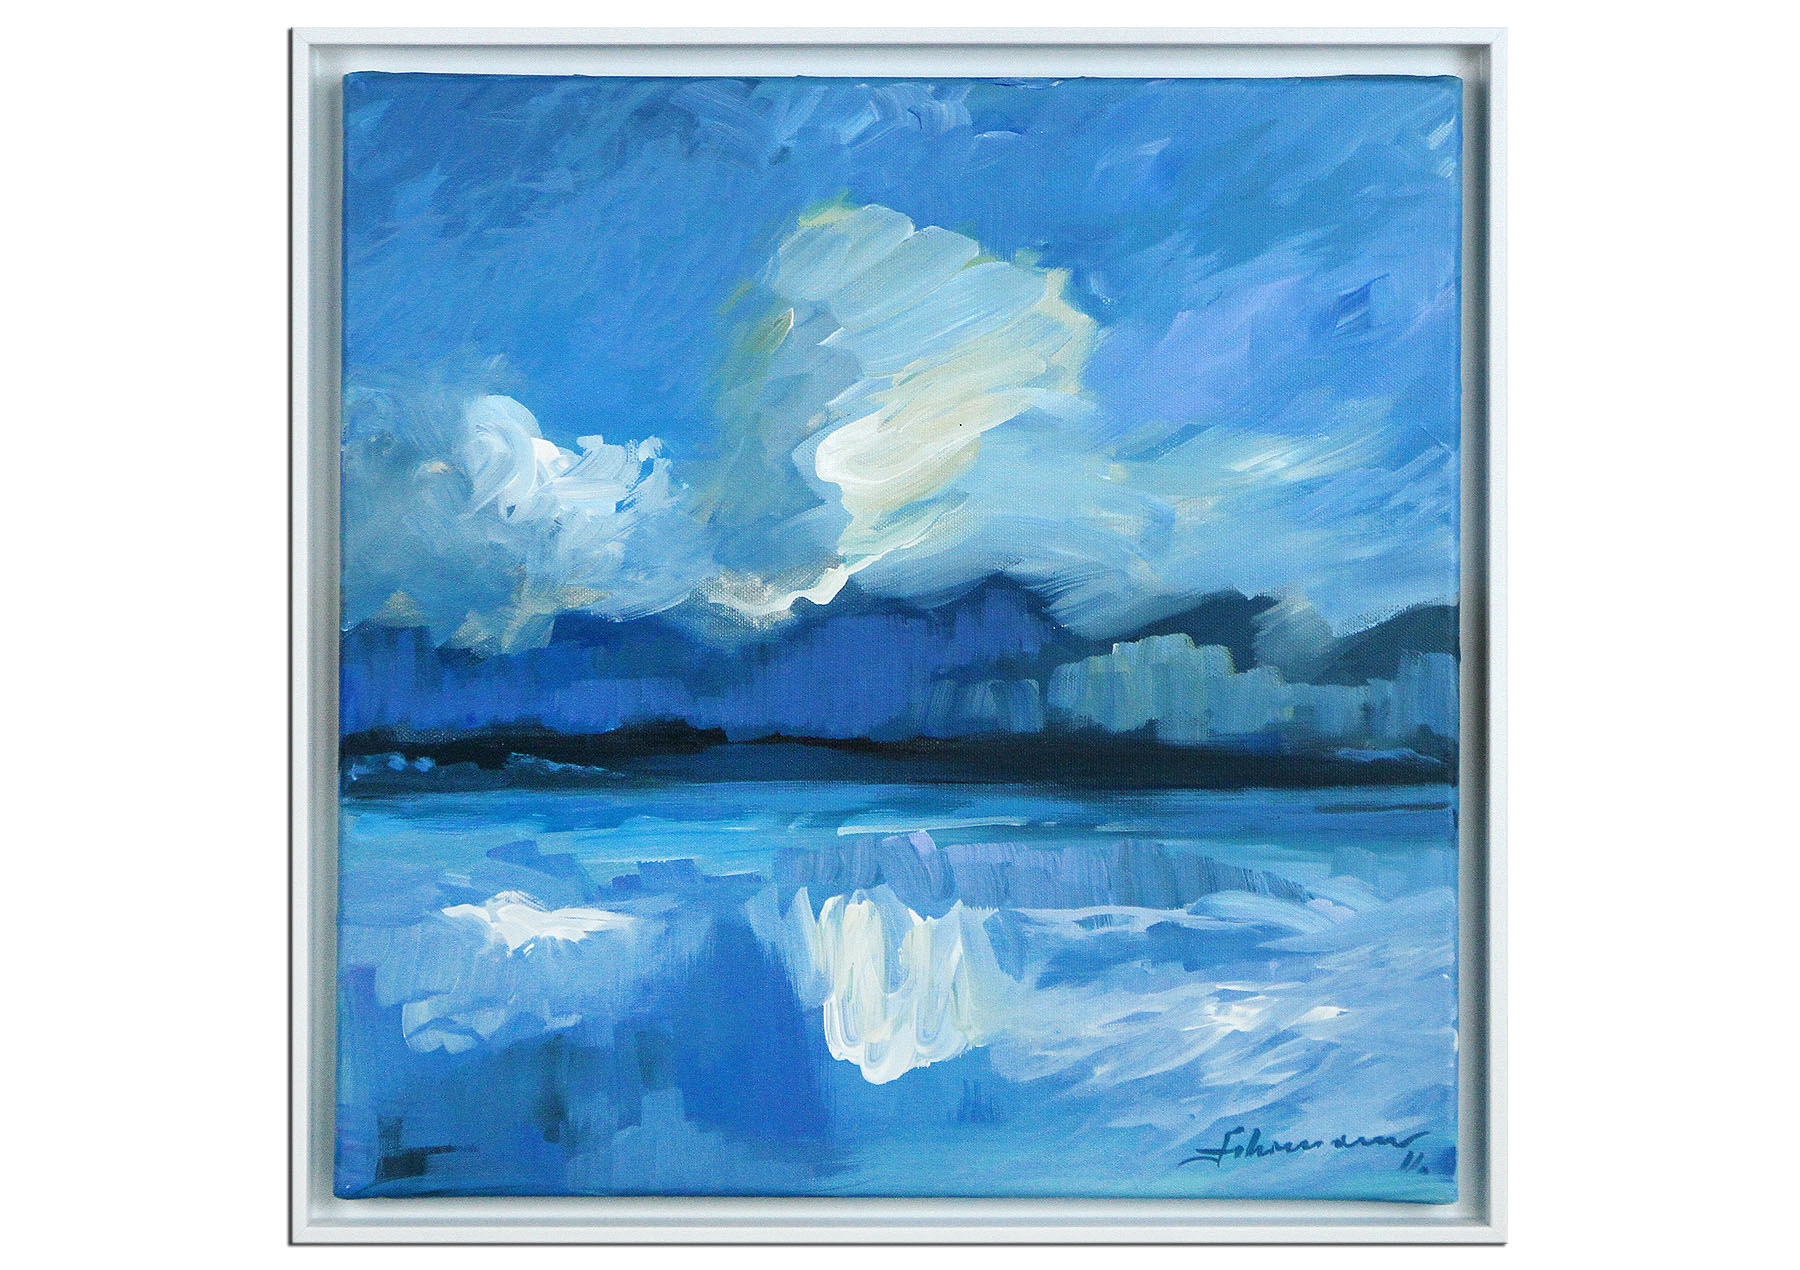 Zeitgenössische Malerei von Uwe Fehrmann: "Wolken II" (A)